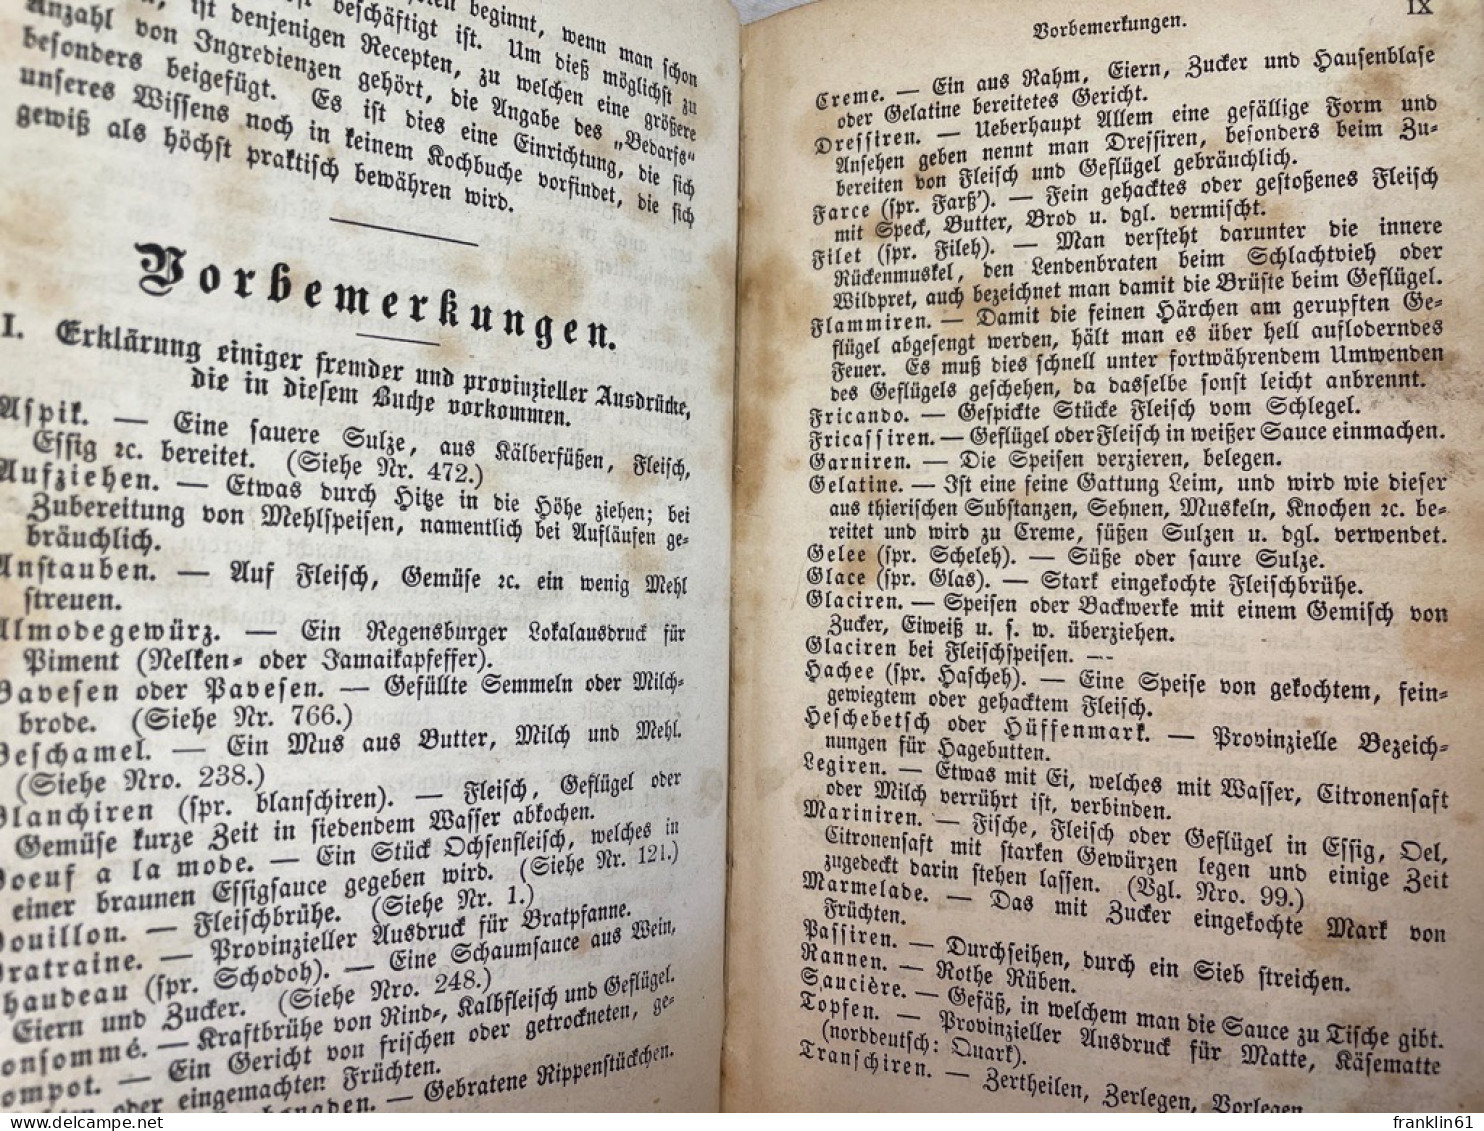 Regensburger Kochbuch. - Food & Drinks